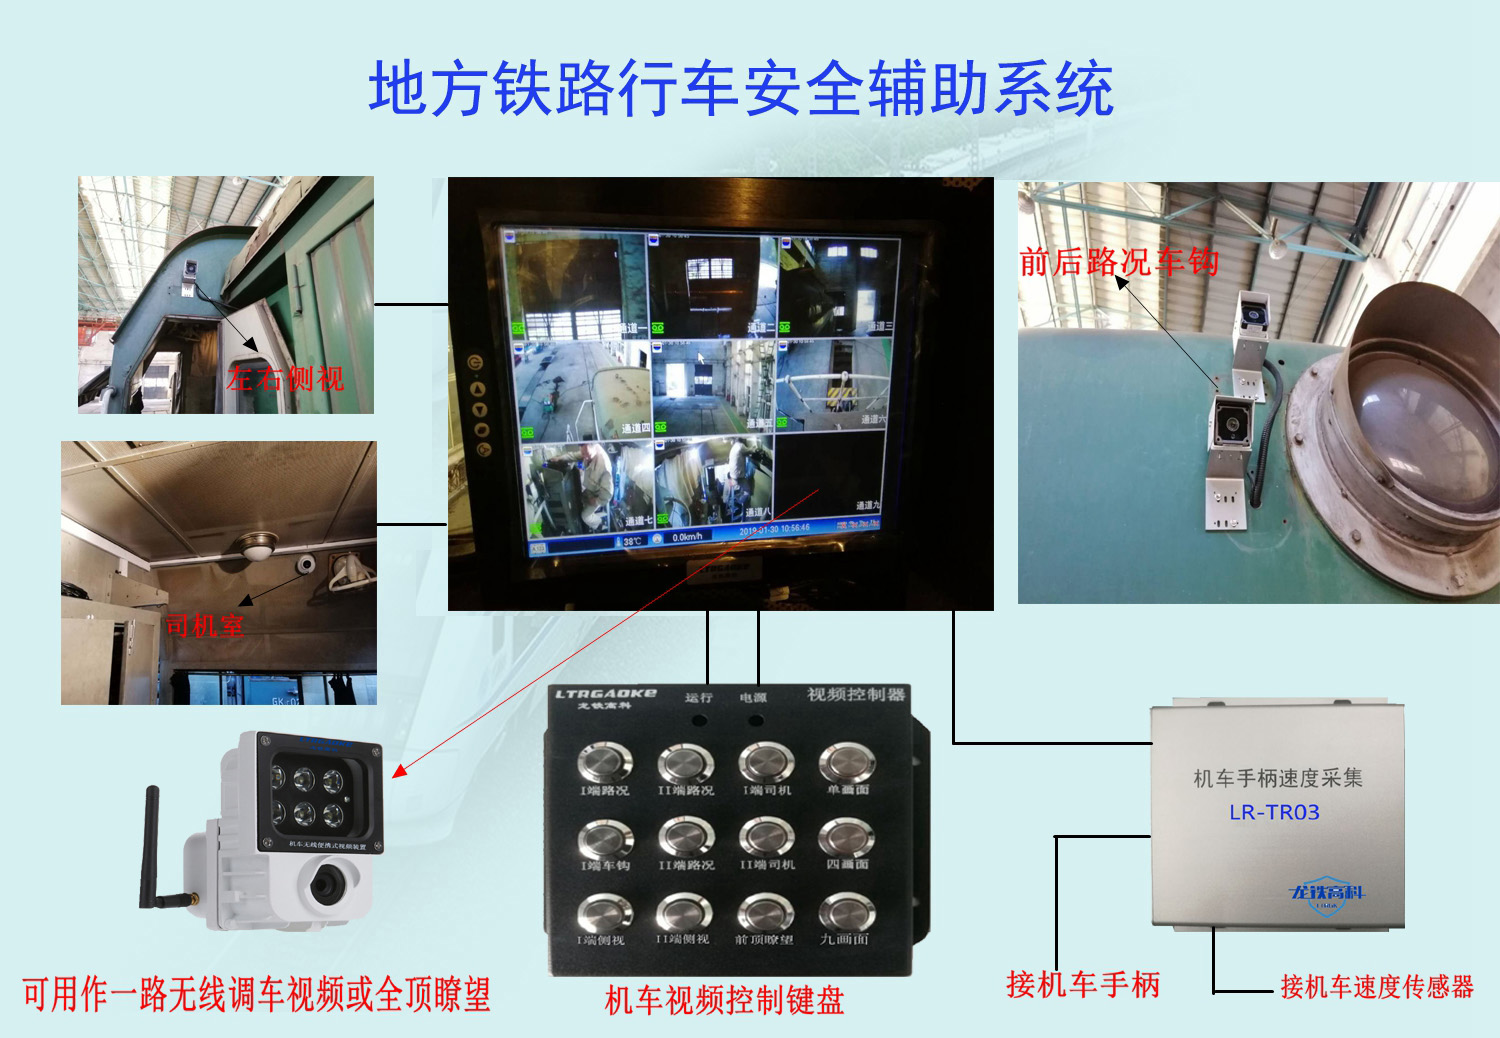 机车电子添乘系统/机车视频监控系统